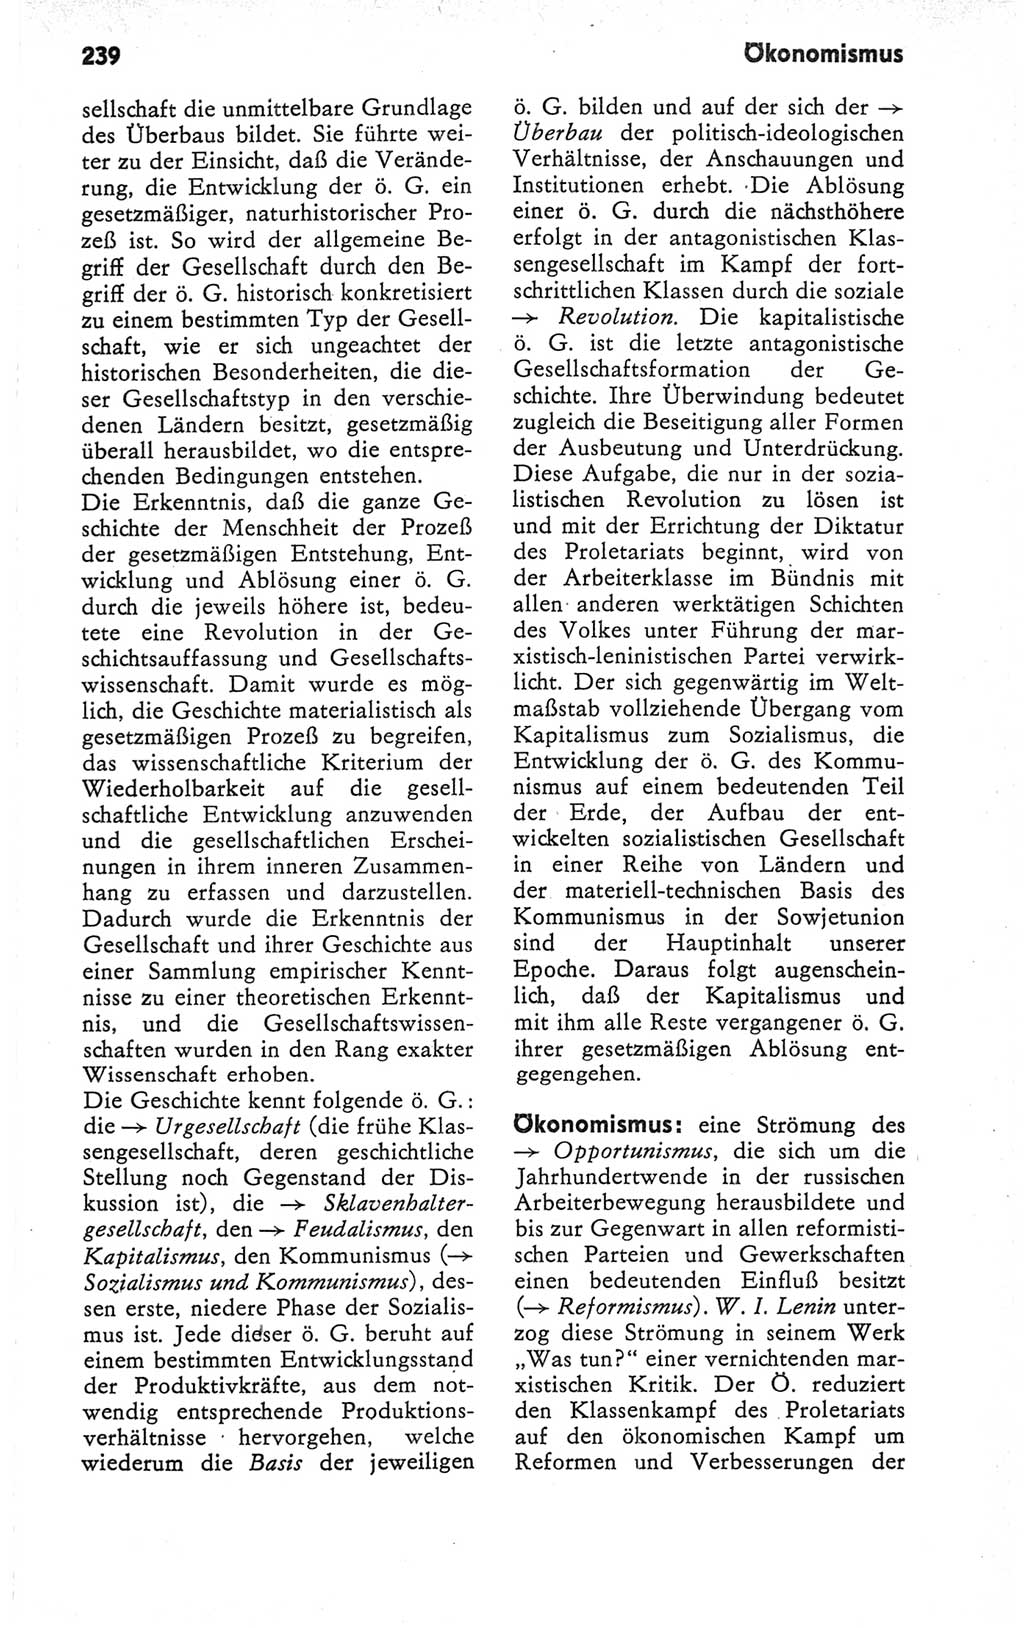 Kleines Wörterbuch der marxistisch-leninistischen Philosophie [Deutsche Demokratische Republik (DDR)] 1979, Seite 239 (Kl. Wb. ML Phil. DDR 1979, S. 239)